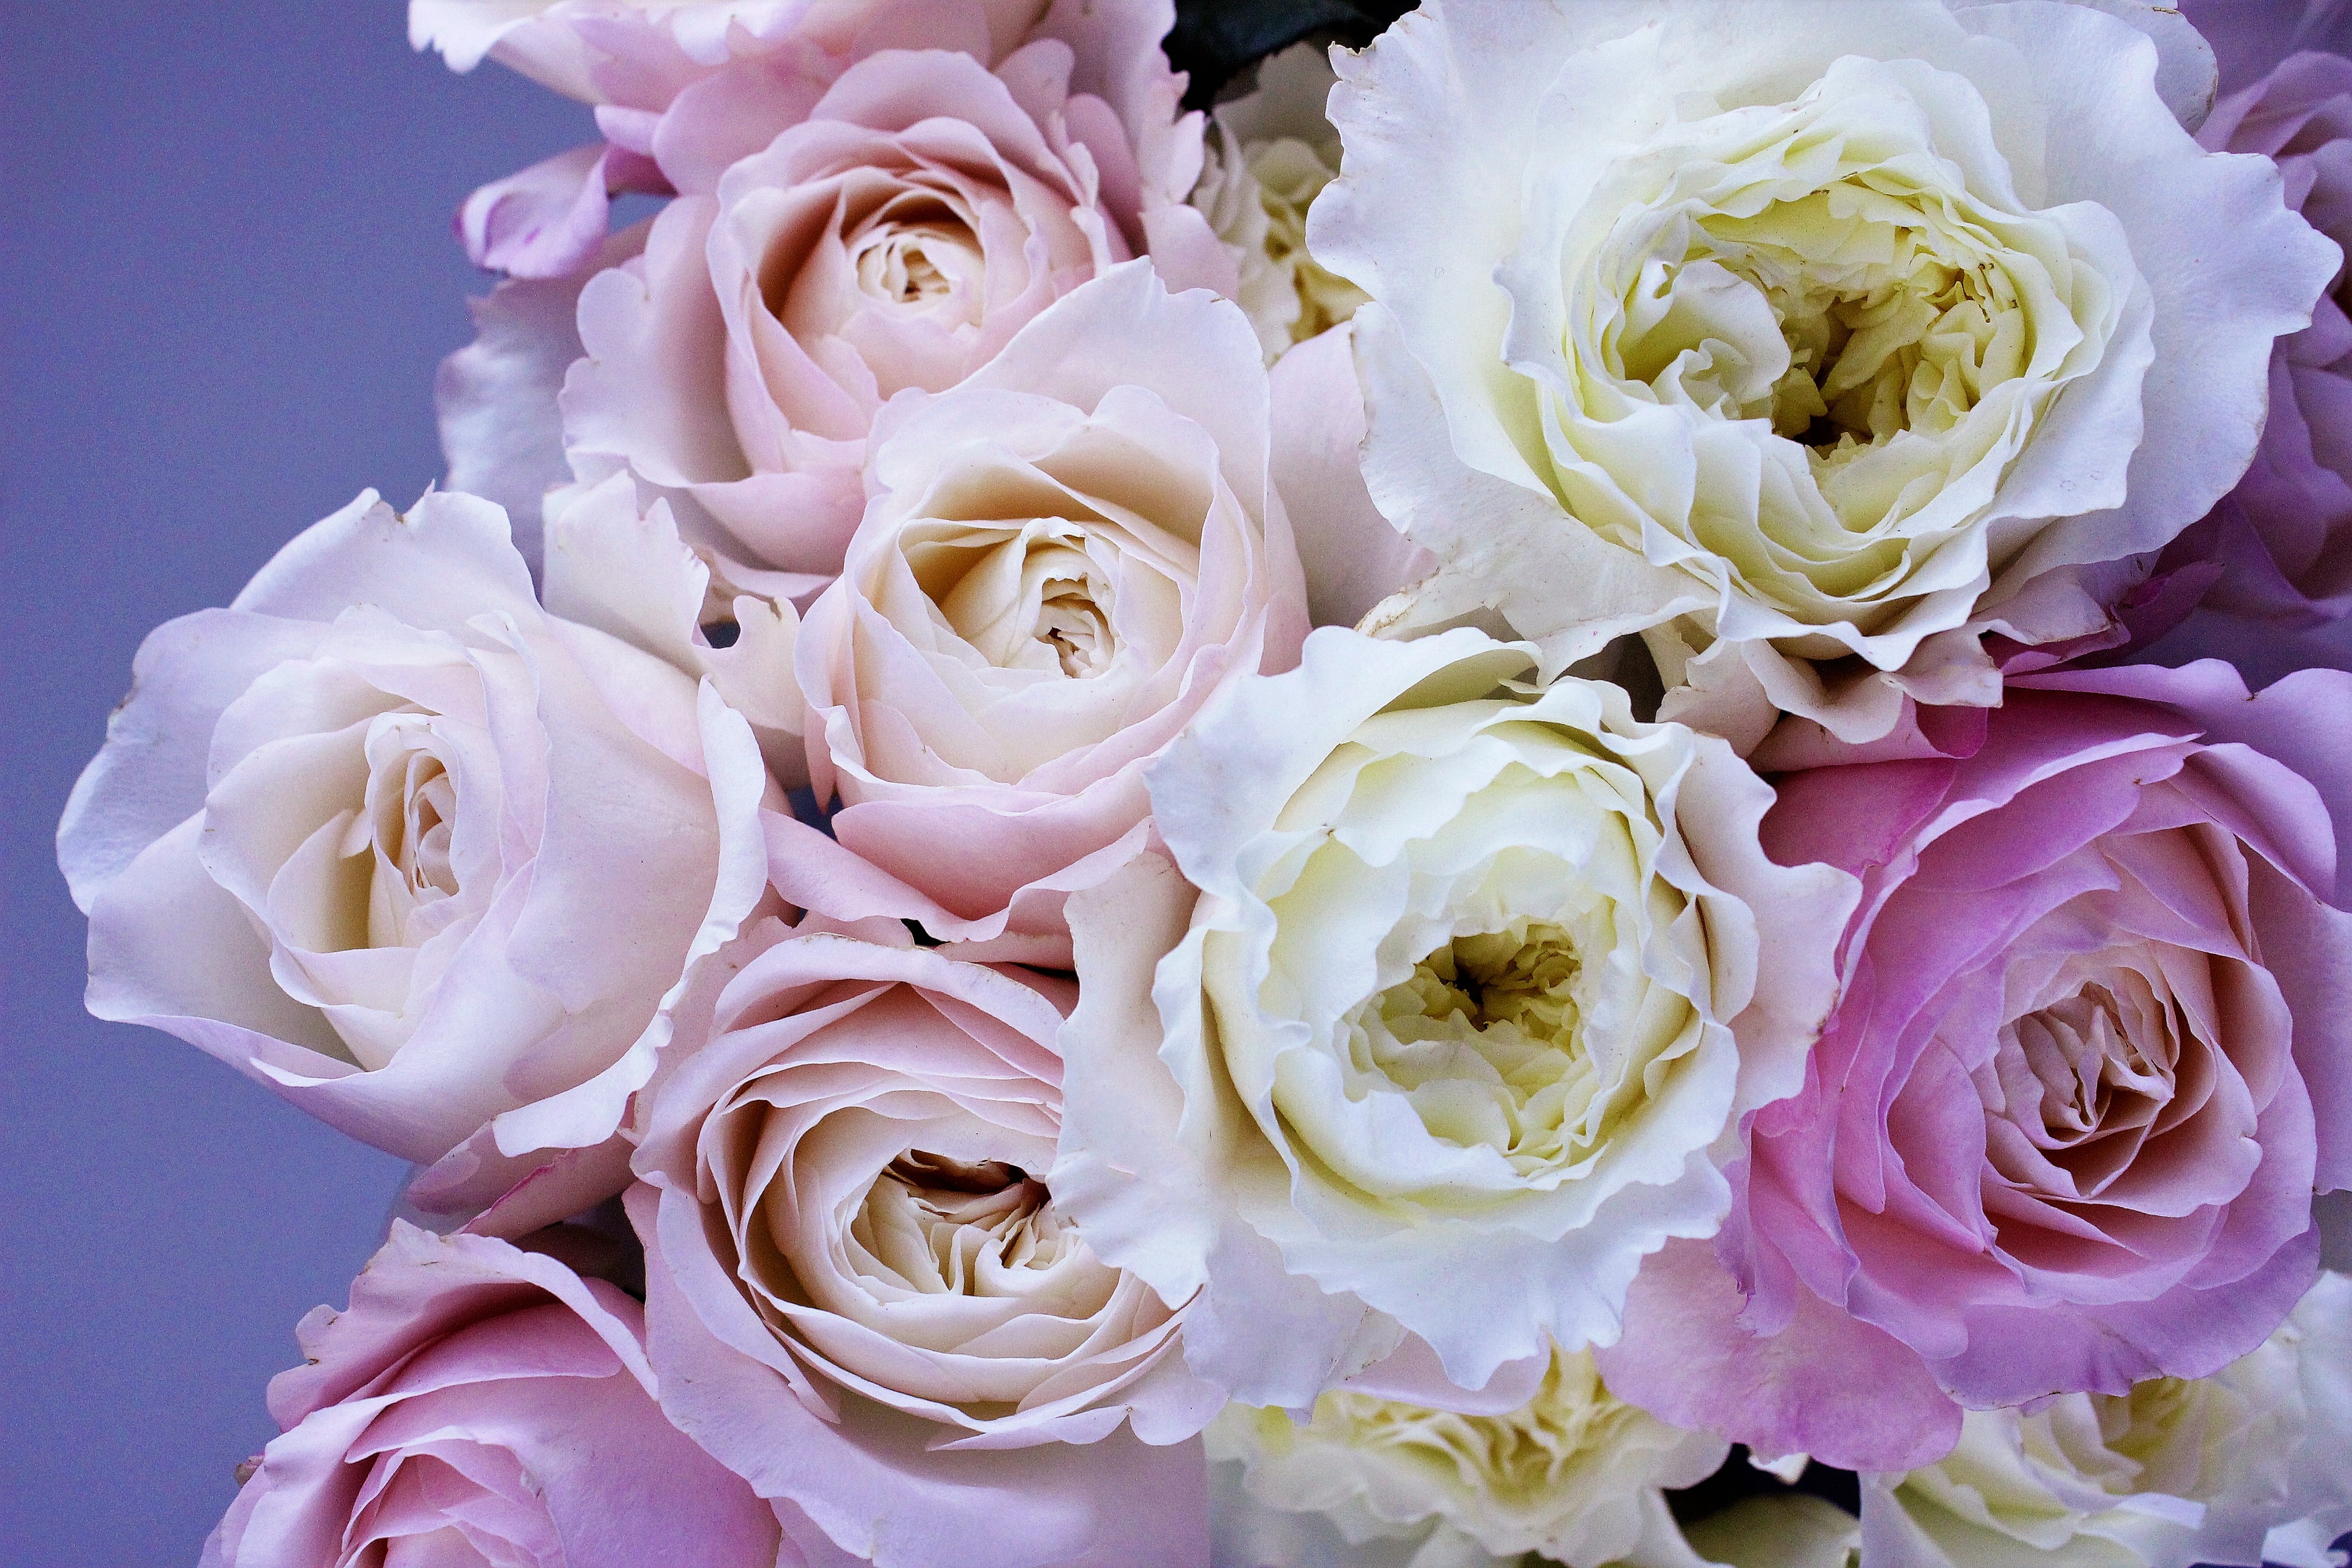 Скачать обои бесплатно Цветок, Роза, Пастель, Белый Цветок, Земля/природа, Розовый Цветок, Флауэрсы картинка на рабочий стол ПК